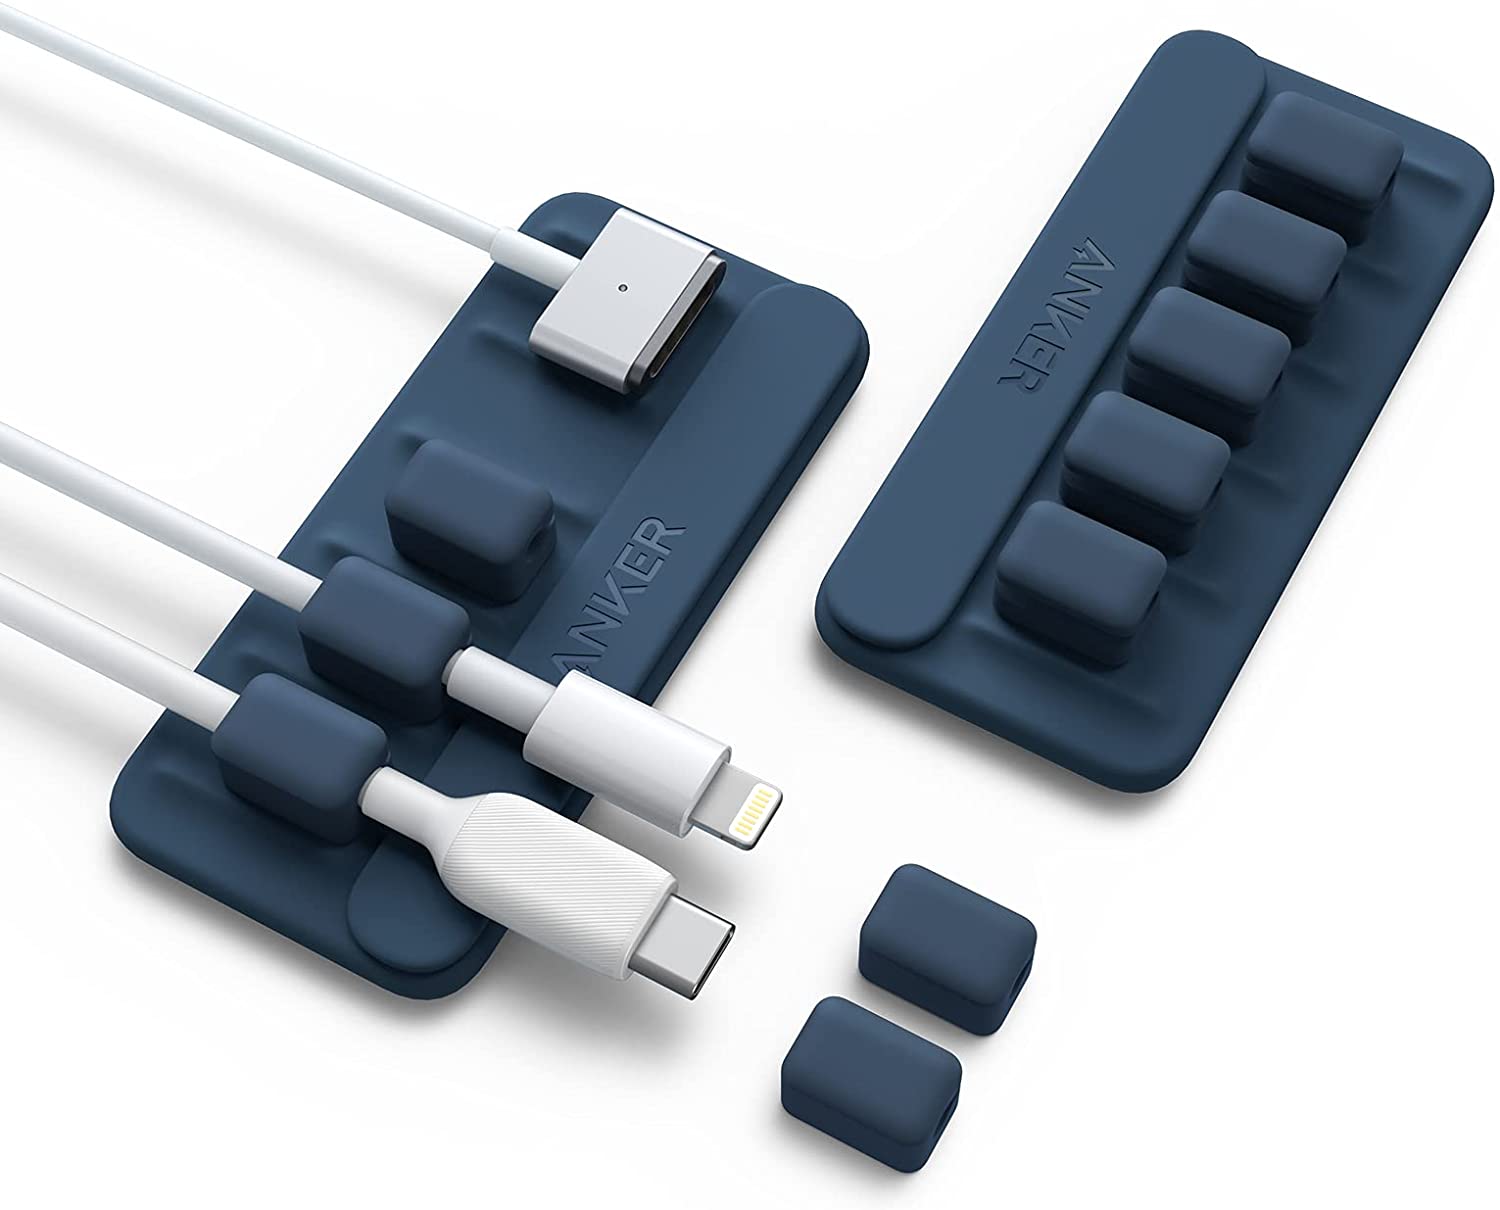 【300円OFF 5/16まで】Anker Magnetic Cable Holder 2個セット マグネット式 ケーブルホルダー ライトニングケーブル USB-C ケーブル Micro USB ケーブル 他対応 ブルー 